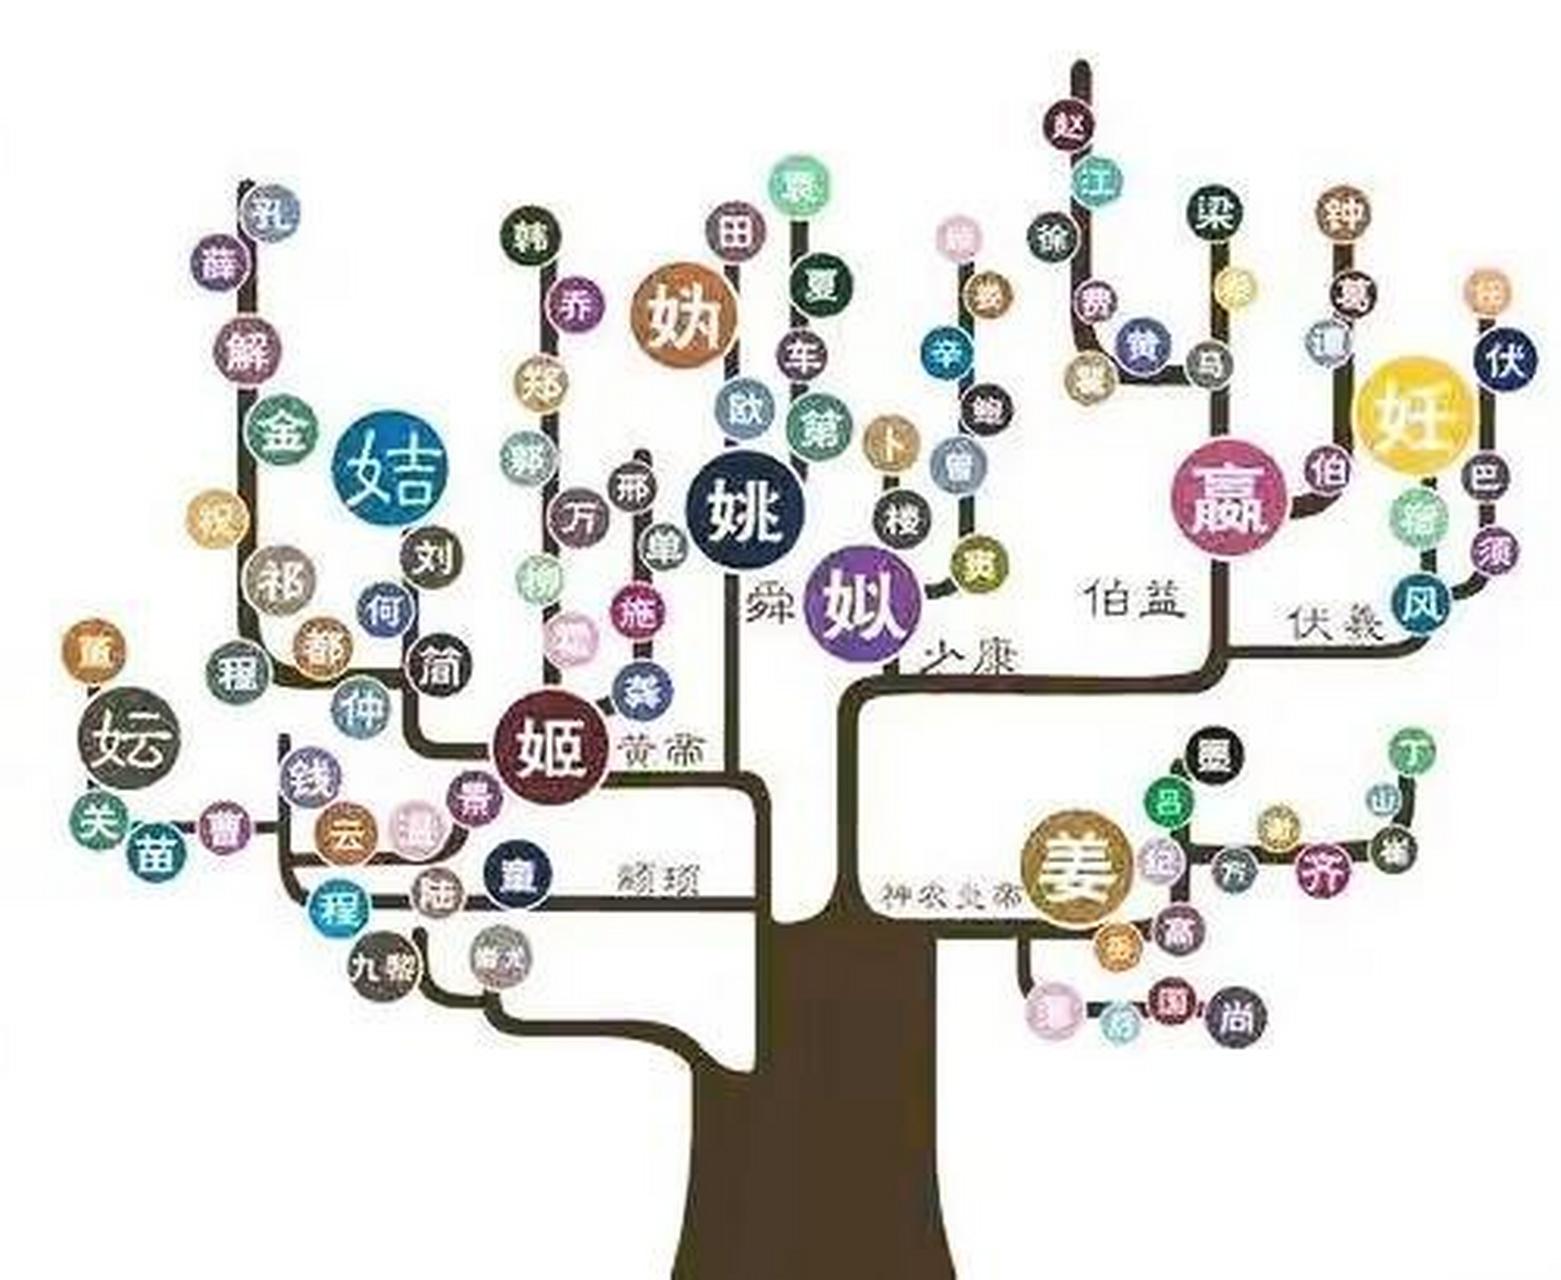 中国姓氏起源树状示意图